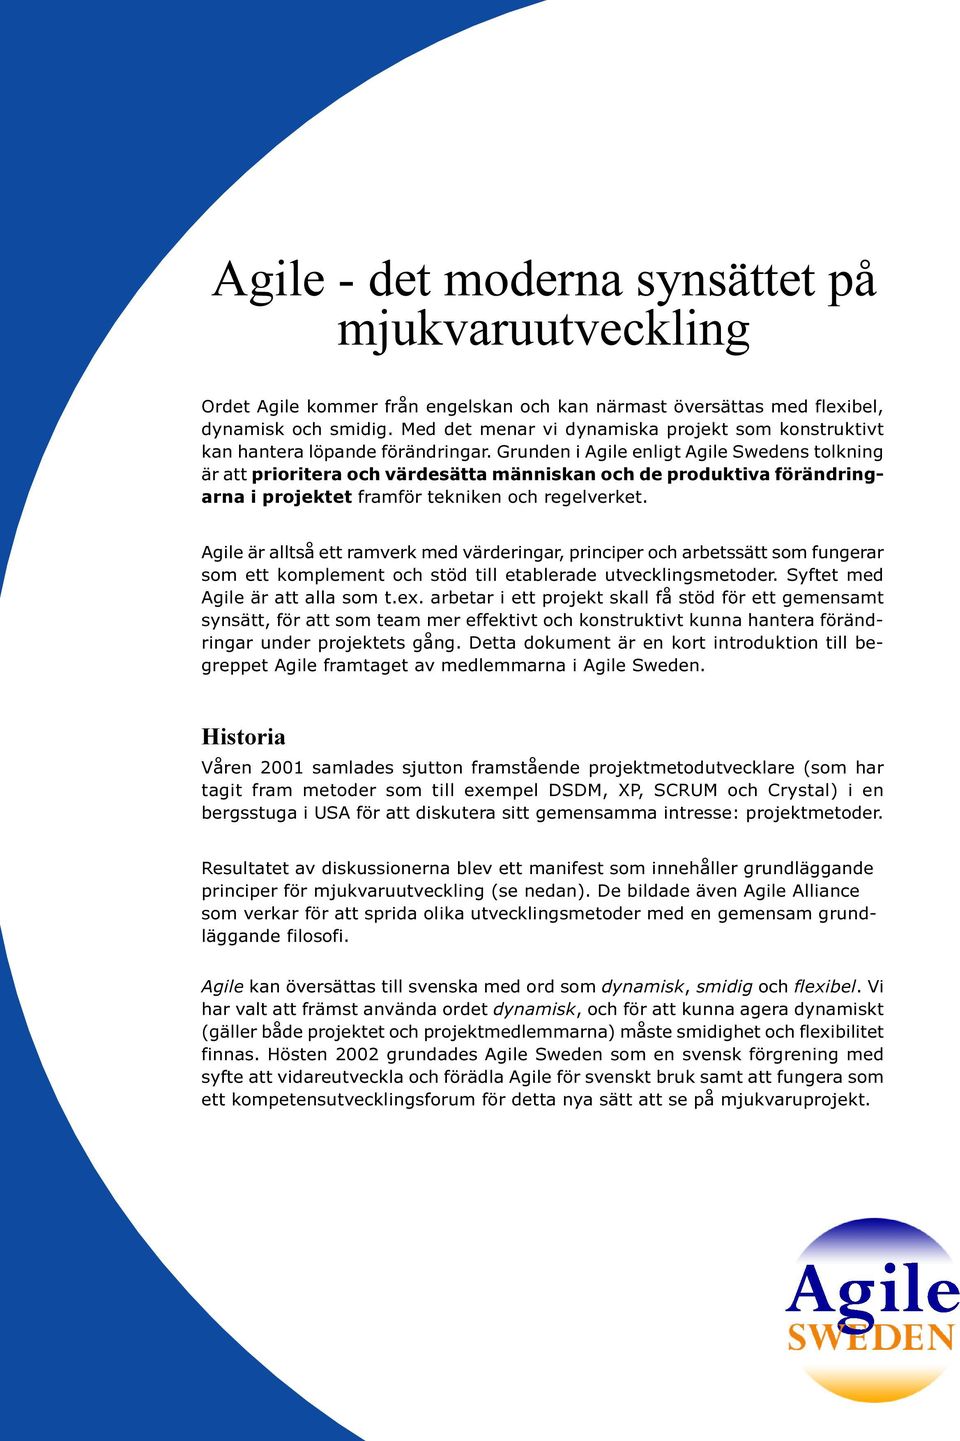 Grunden i Agile enligt Agile Swedens tolkning är att prioritera och värdesätta människan och de produktiva förändringarna i projektet framför tekniken och regelverket.